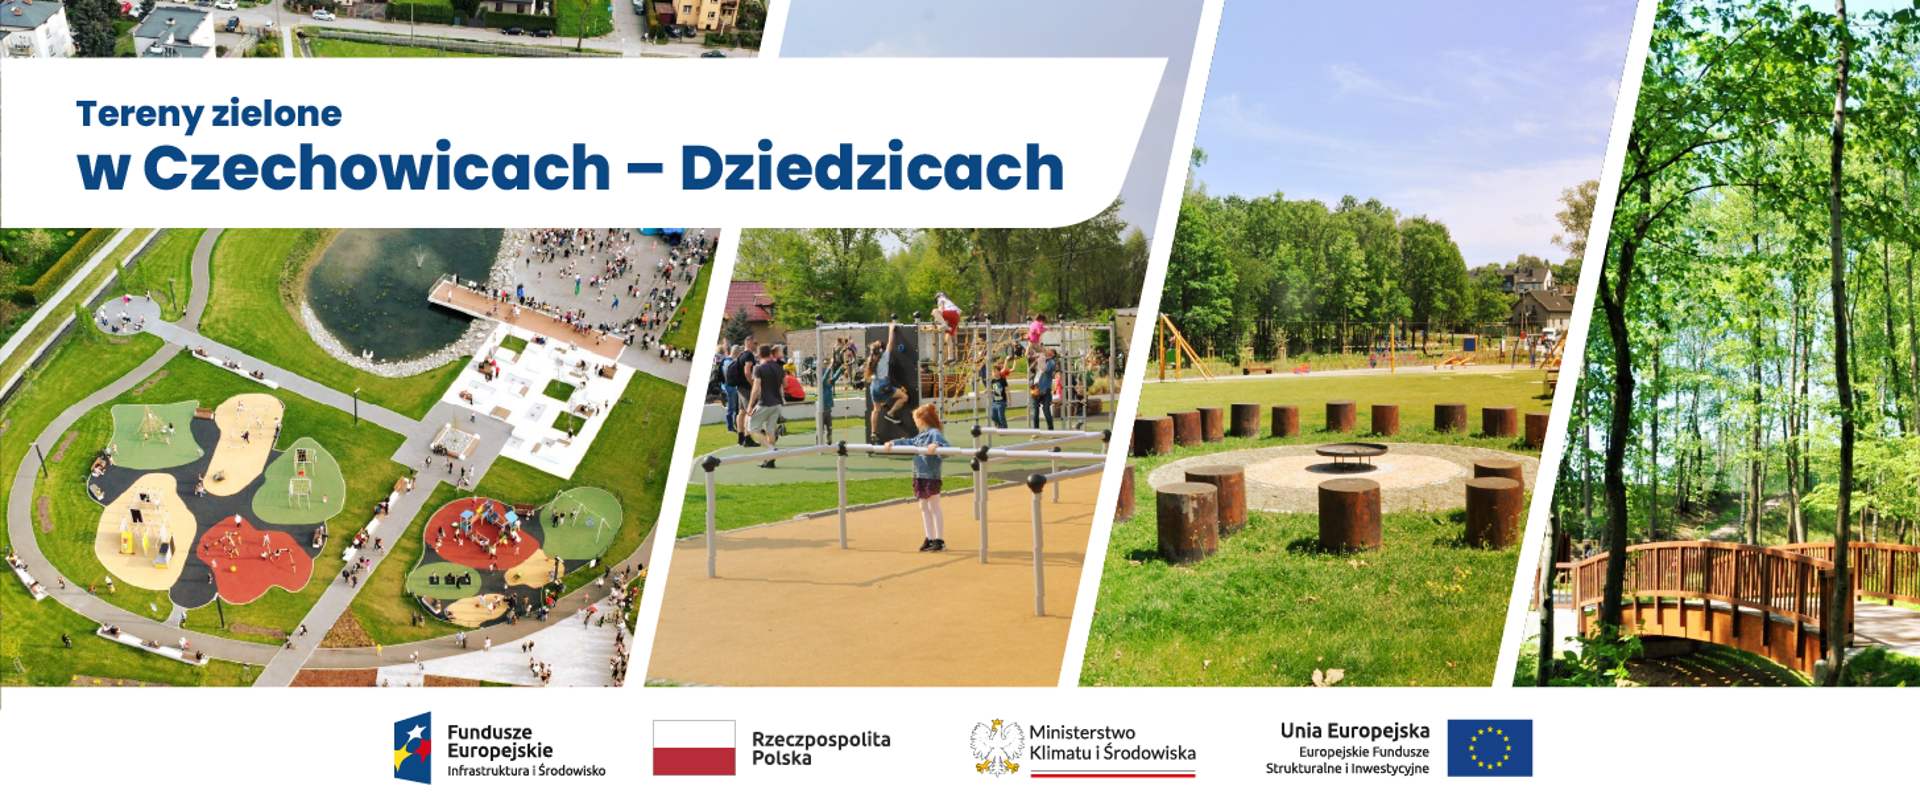 kolarz 4 zdjęć: na pierwszym widok park w Czechowicach - Dziedzicach z lotu ptaka, na drugim plac zabaw i bawiący się ludzie, na trzecim polana z wyznaczonym miejscem na ogniska, na czwartym motek drewniany wśród drzew. Na dole, pod kolażem logotypy POIS 2014-2020